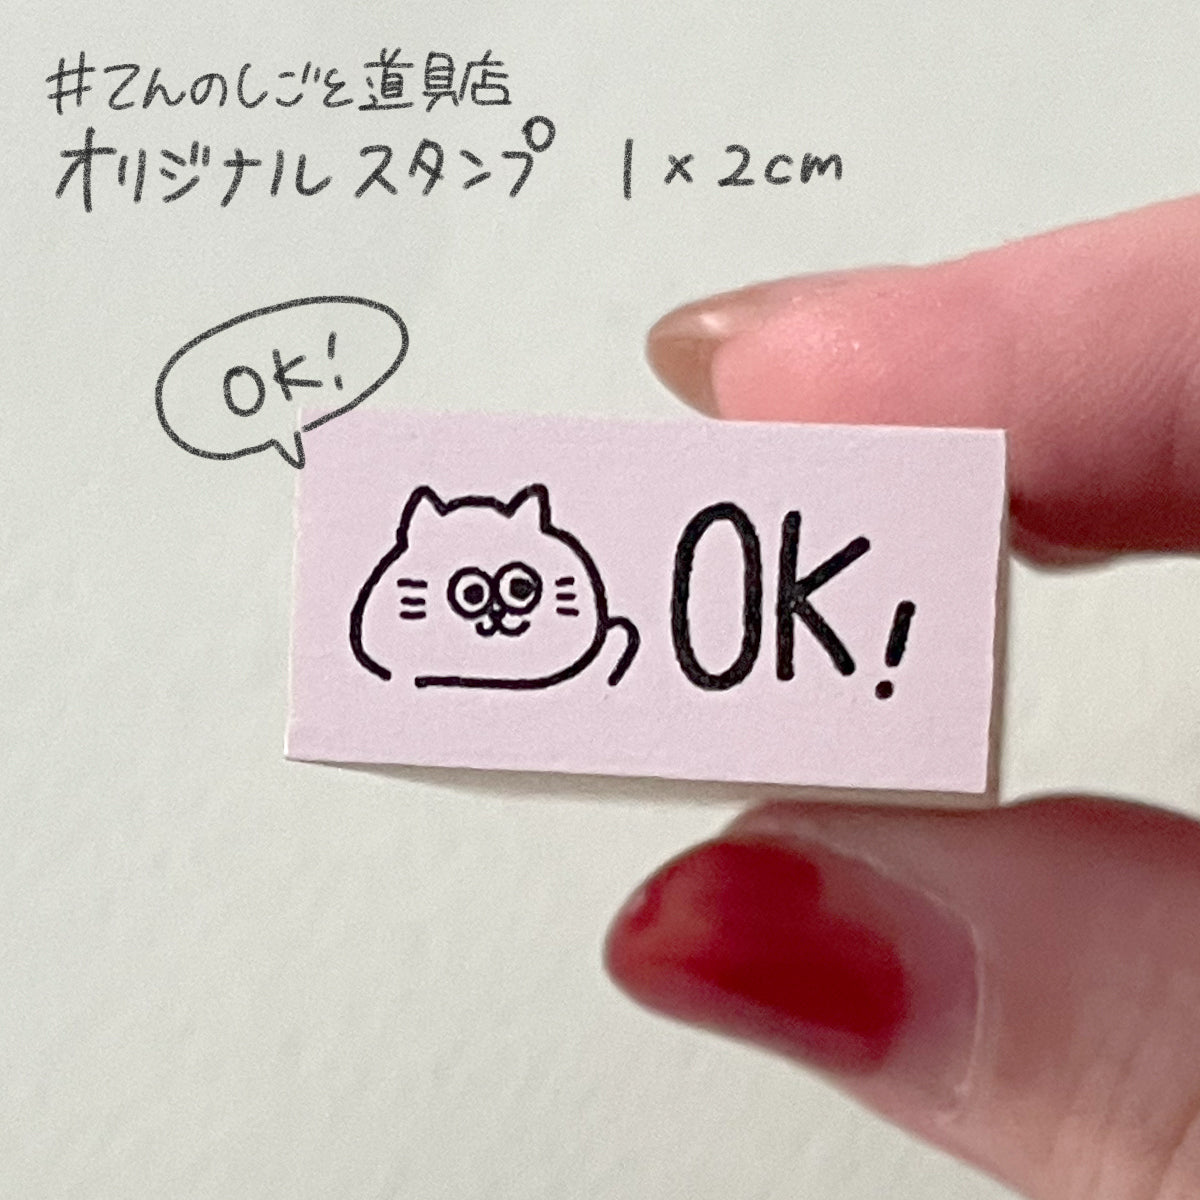 【てんのしごと道具店オリジナル 第4弾】 「OK」スタンプ(1×2cm)